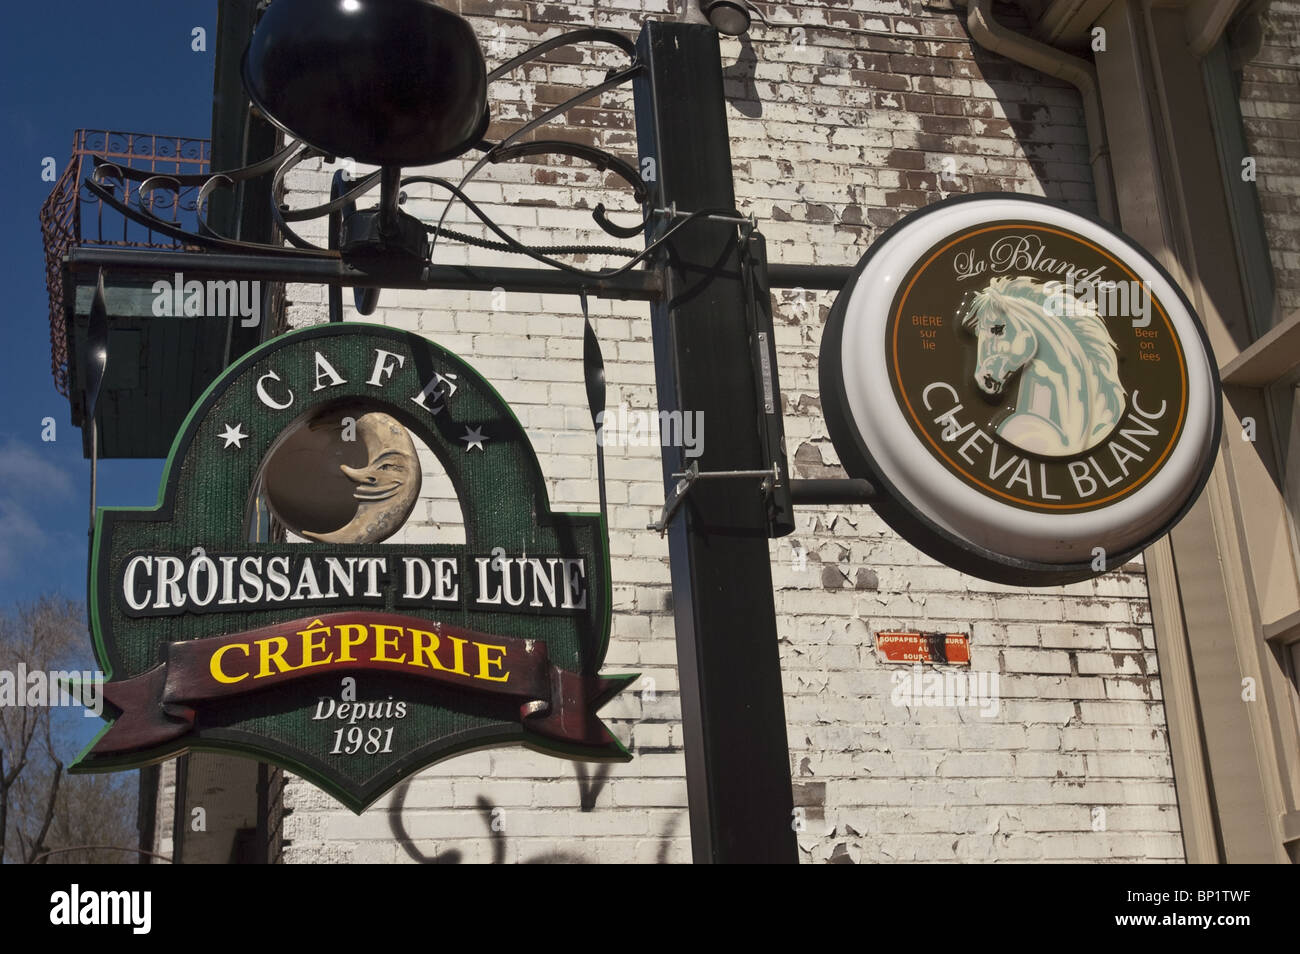 Cafe Croissant de Lune, Creperie, La Blanche, Cheval Blanc, Rue Saint-Denis, Saint Denis Street, Latin Quarter, Montreal, Canada Stock Photo